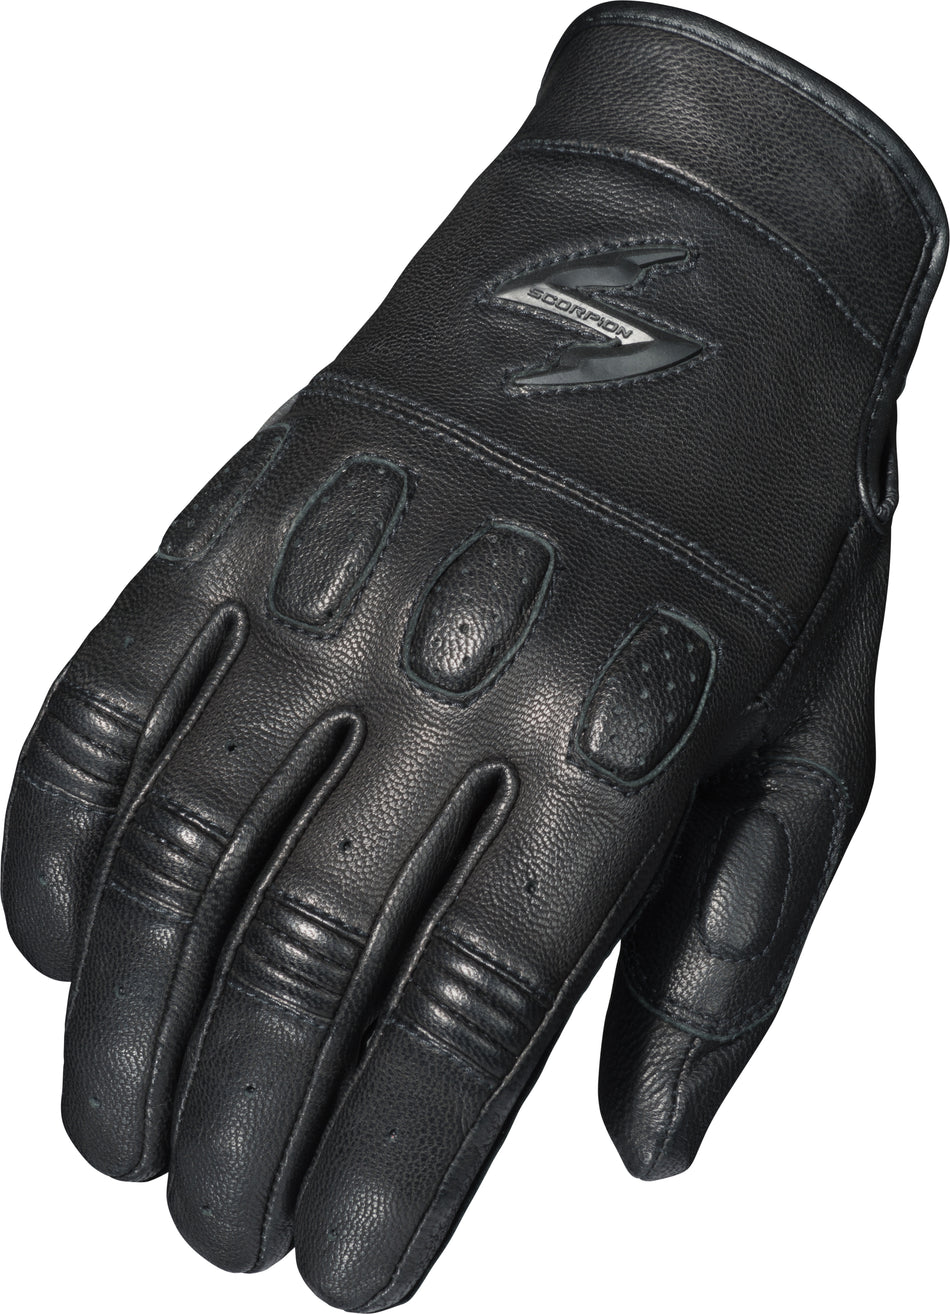 SCORPION EXO Gripster Gloves Black Lg G34-035